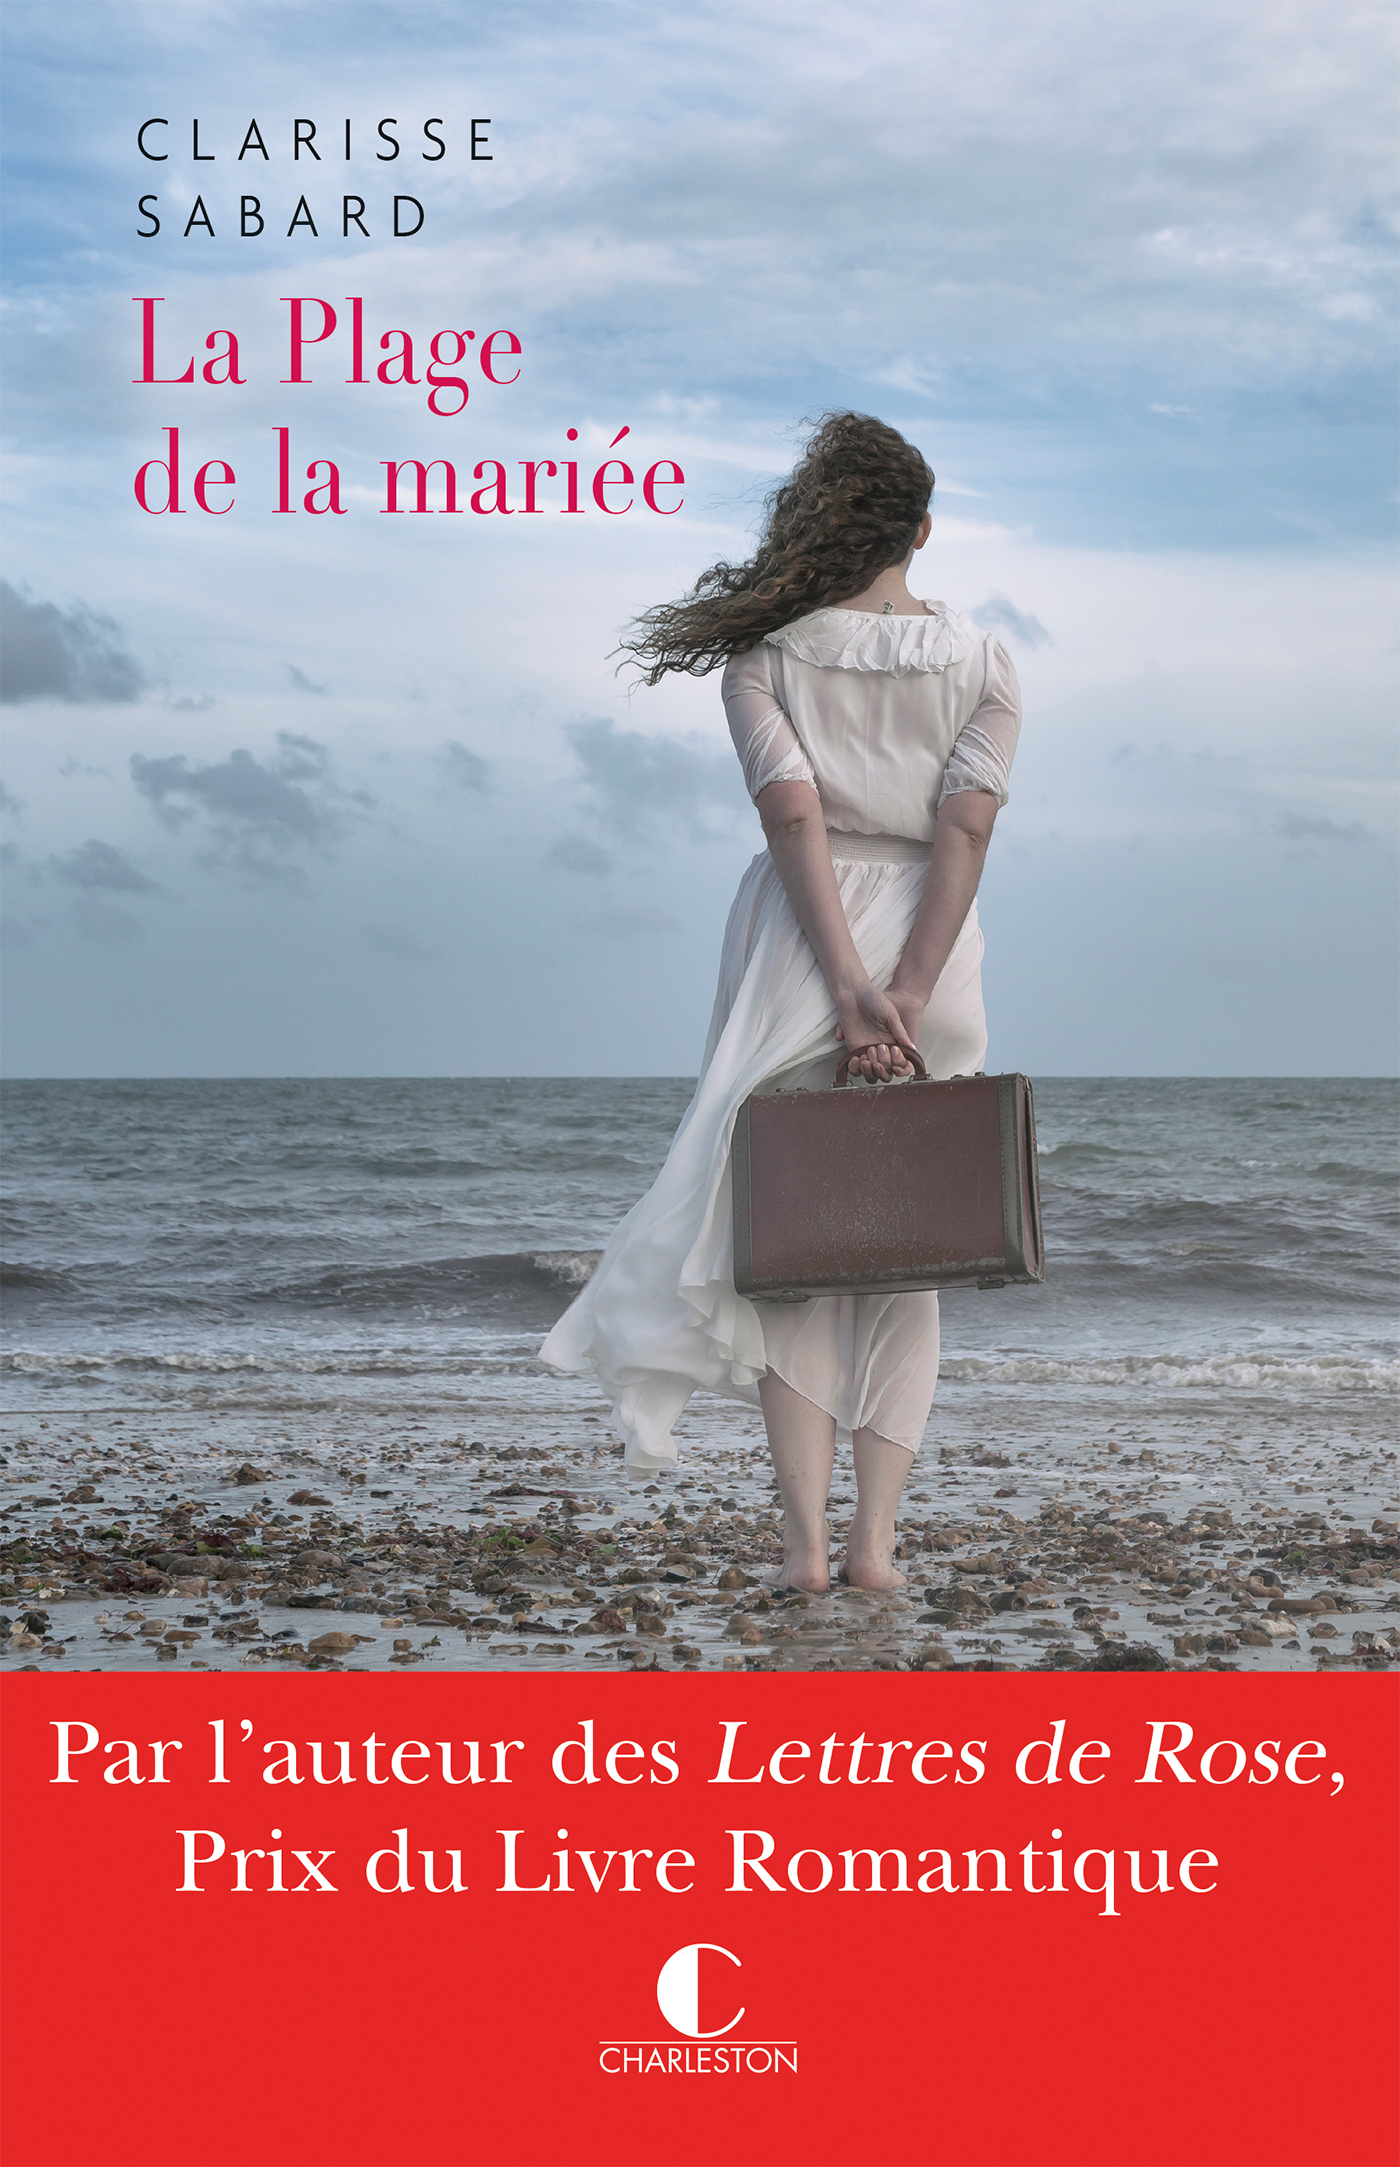 Les lettres de Rose - Prix du livre romantique, Clarisse Sabard